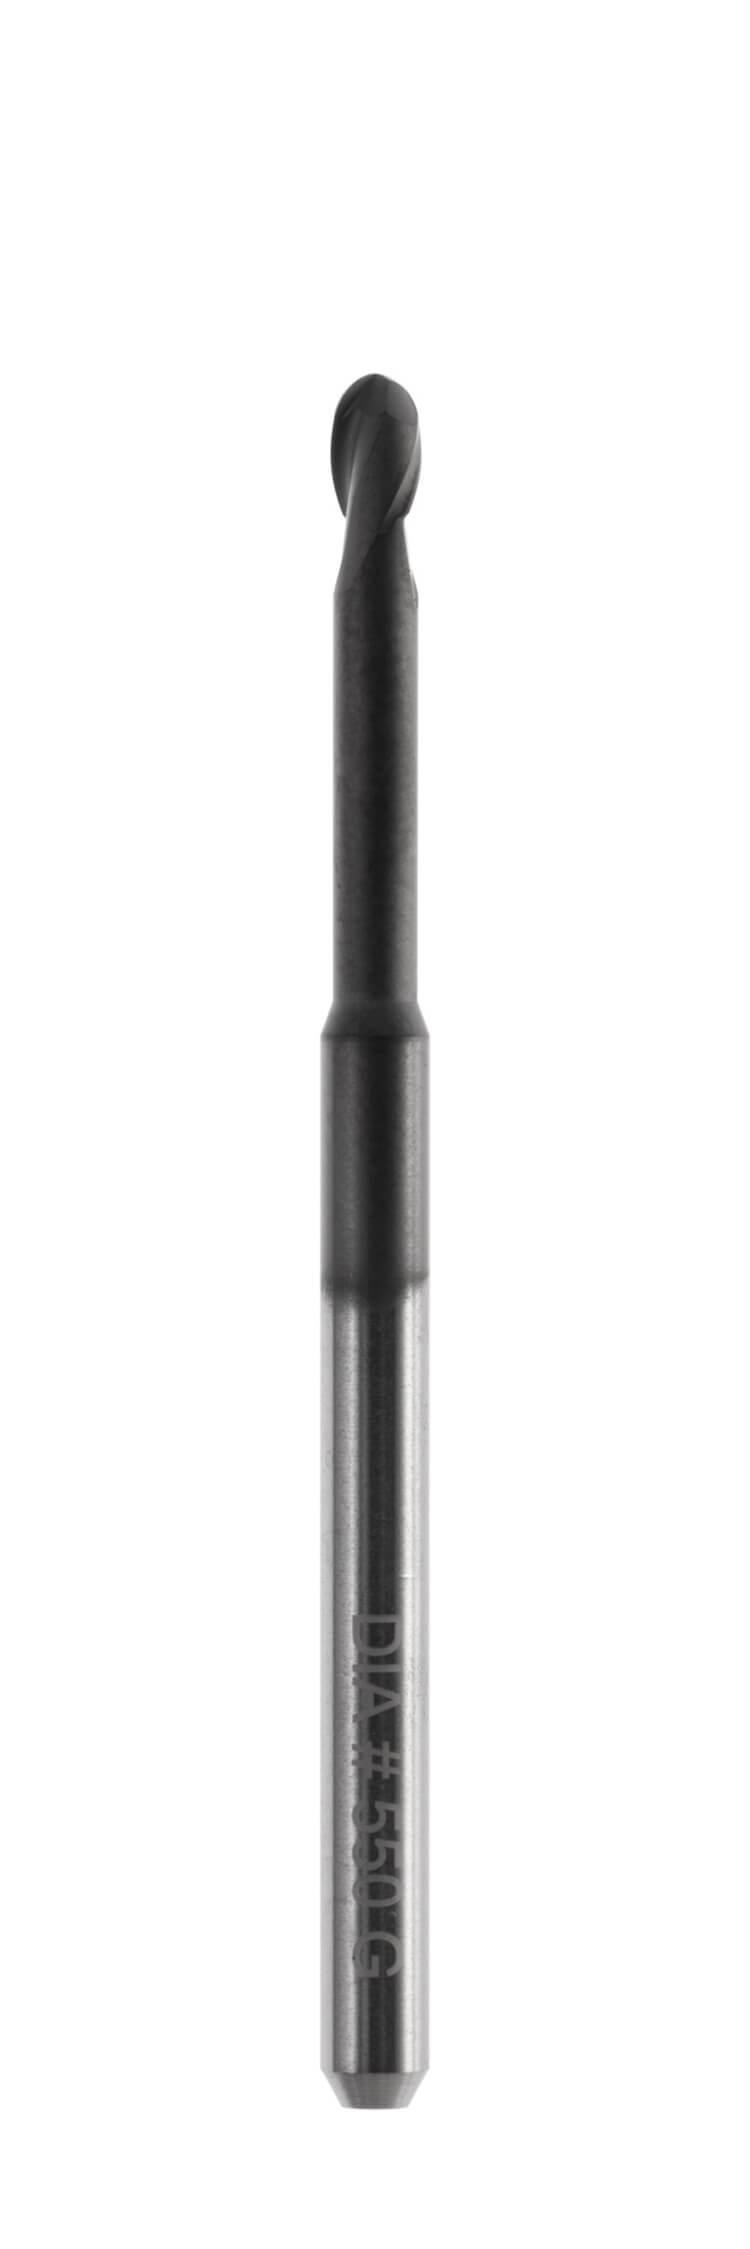 Offene Maschinensysteme 3,0 mm Schaft, Länge 47,0 mm